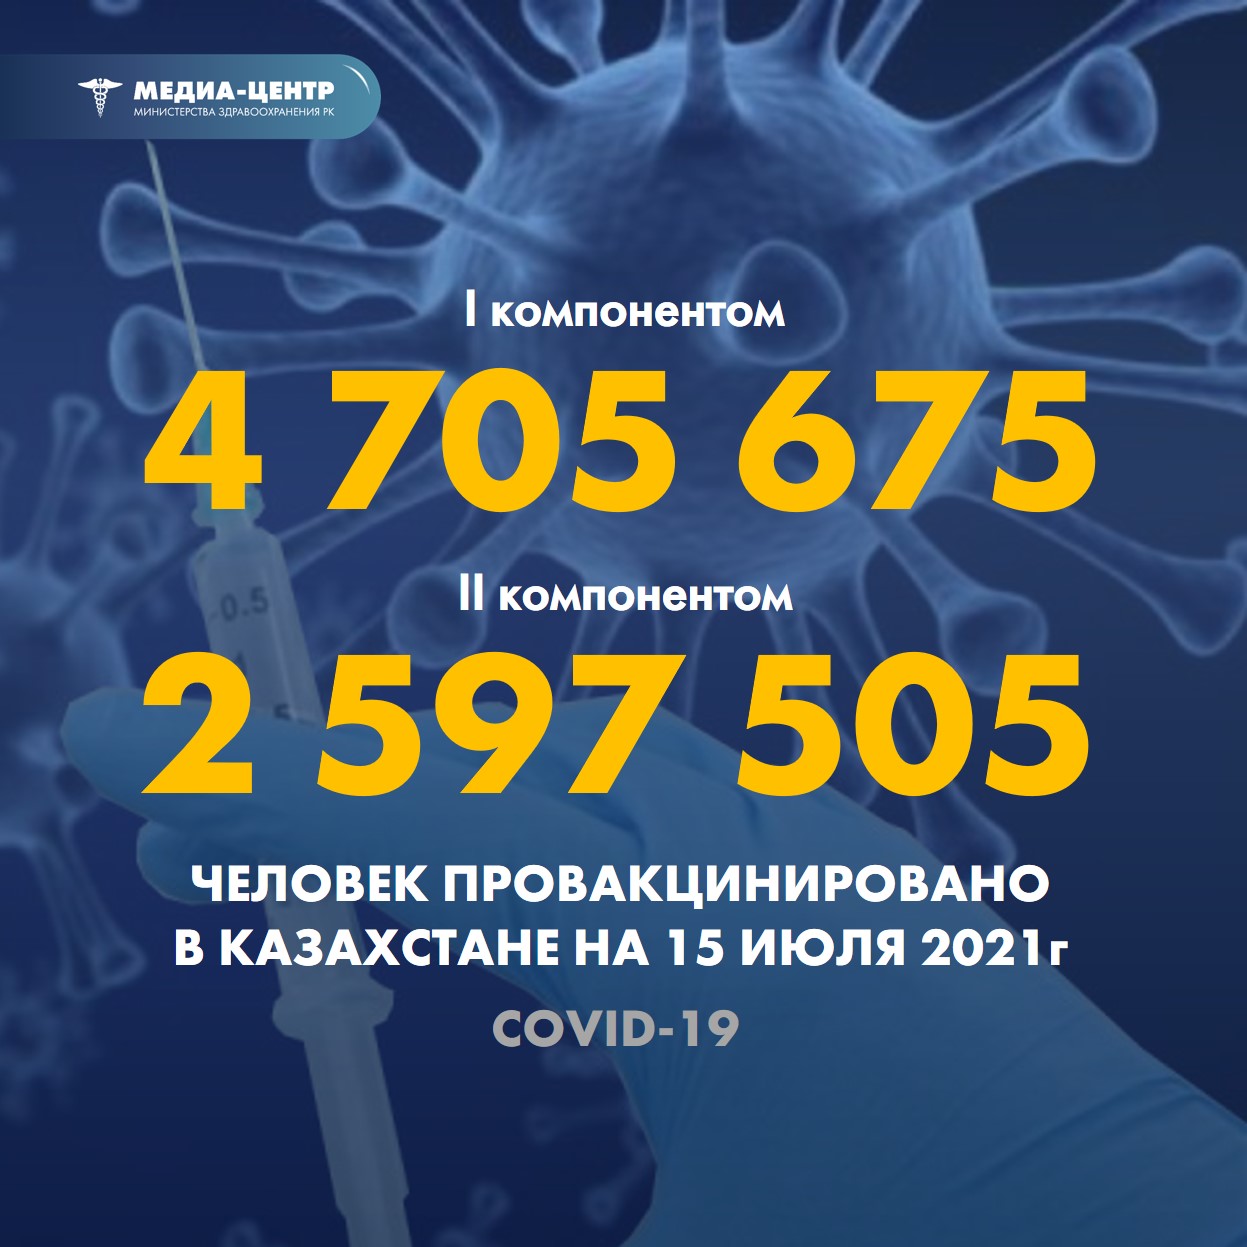 I компонентом 4 705 675 человек провакцинировано в Казахстане на 15 июля 2021 г, II компонентом 2 597 505 человек.